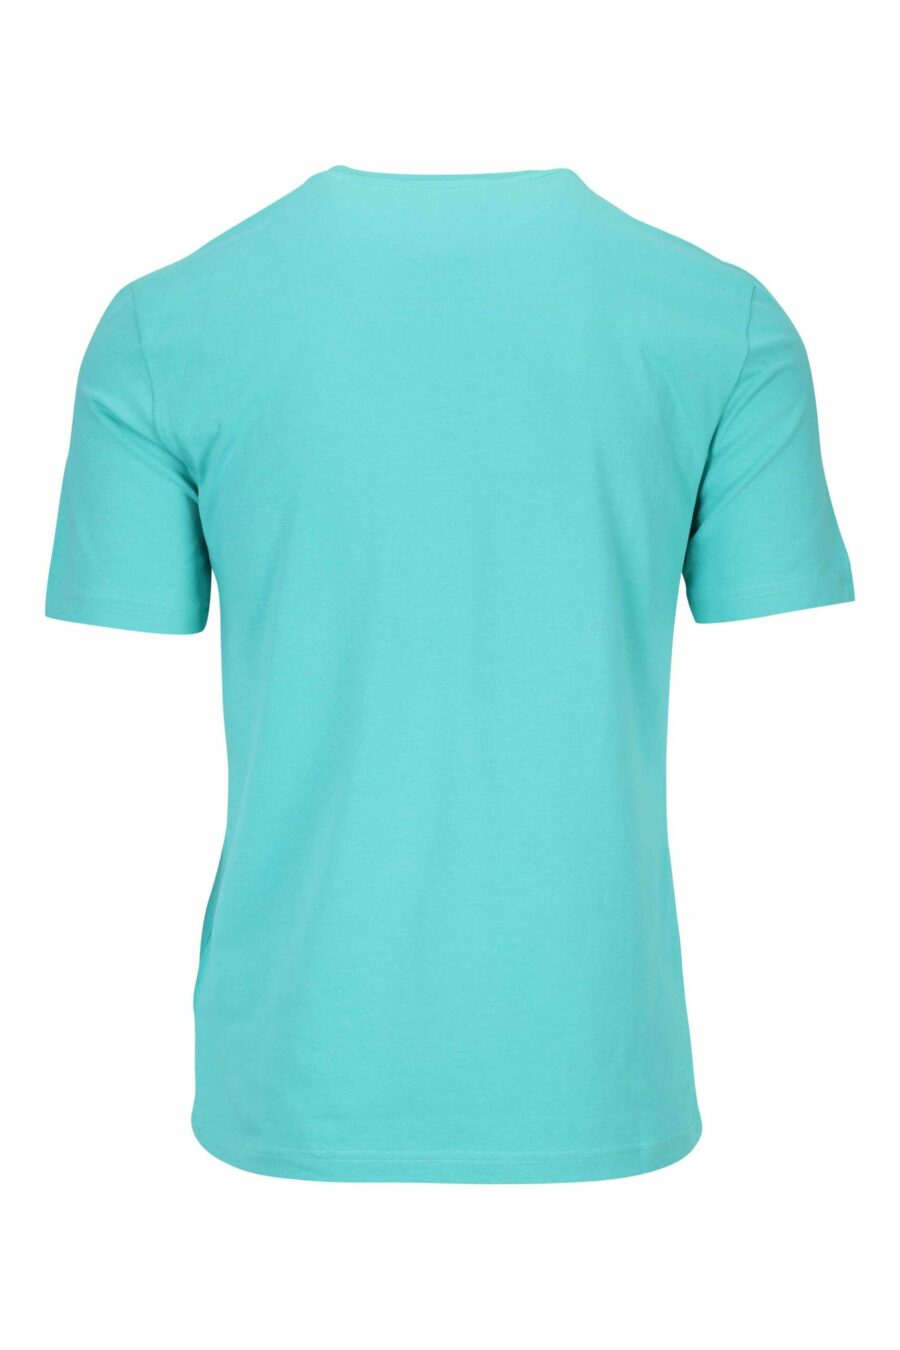 T-Shirt teal mit klassischem schwarzem Maxilogue - 667113391748 1 skaliert